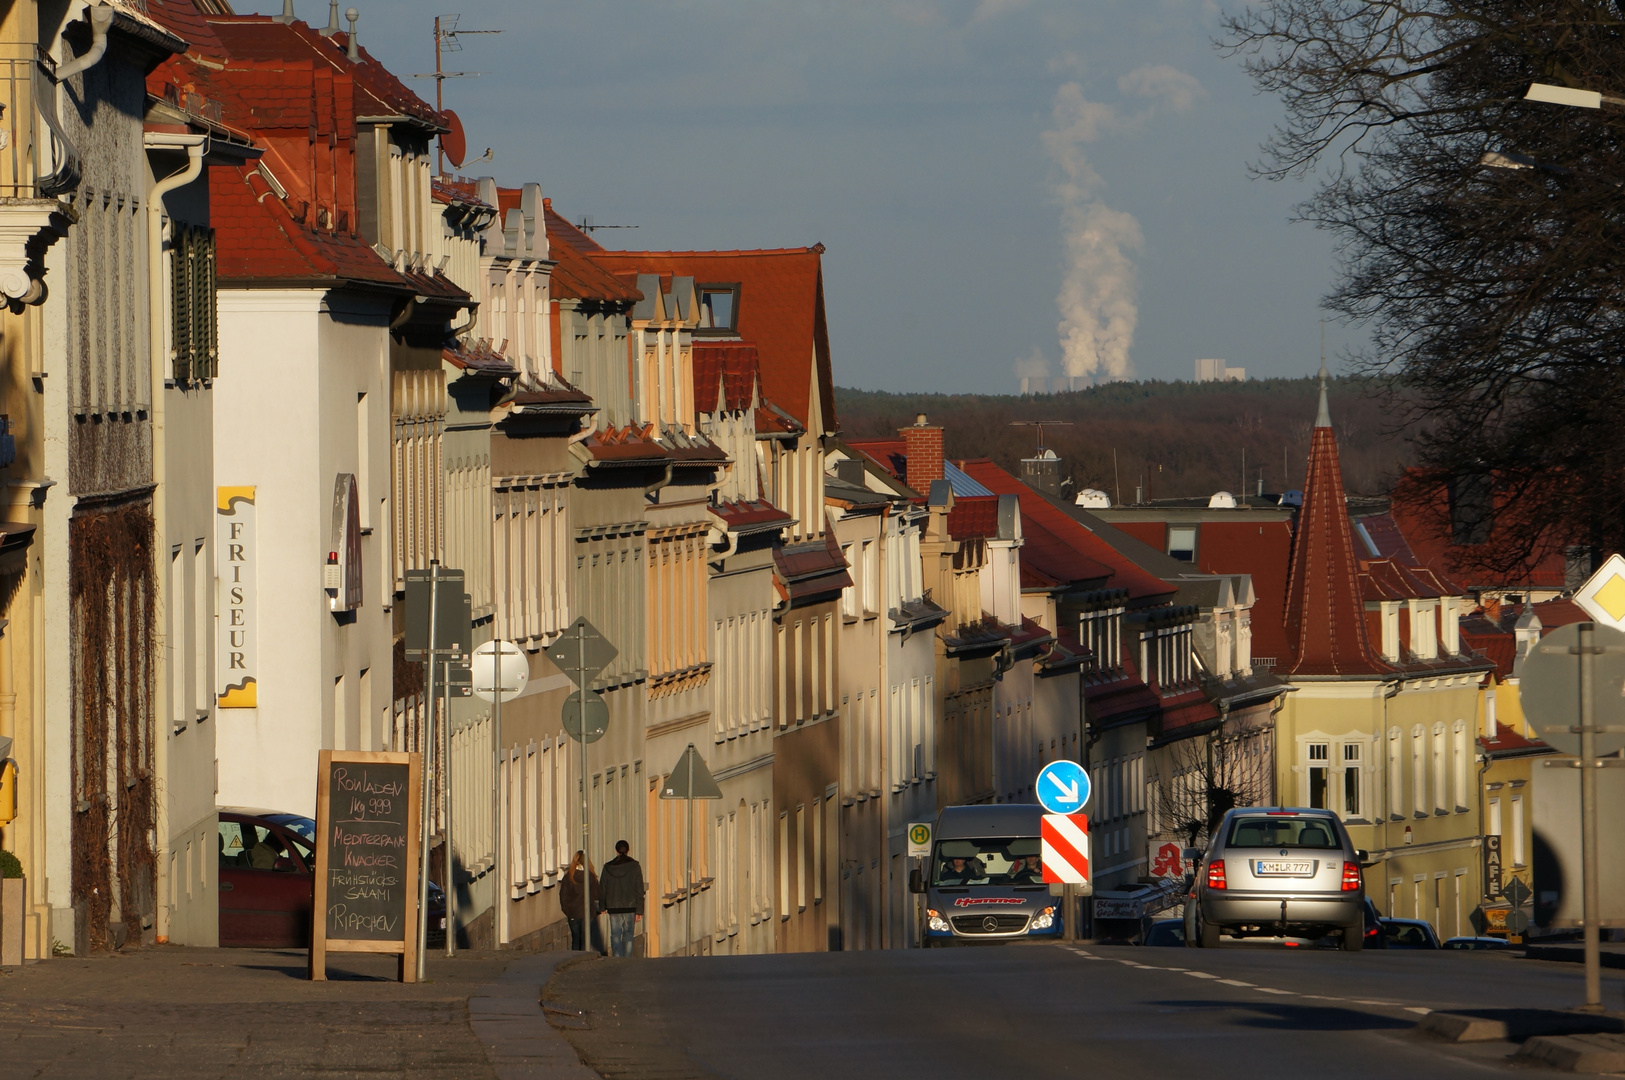 Streetview in Kamenz